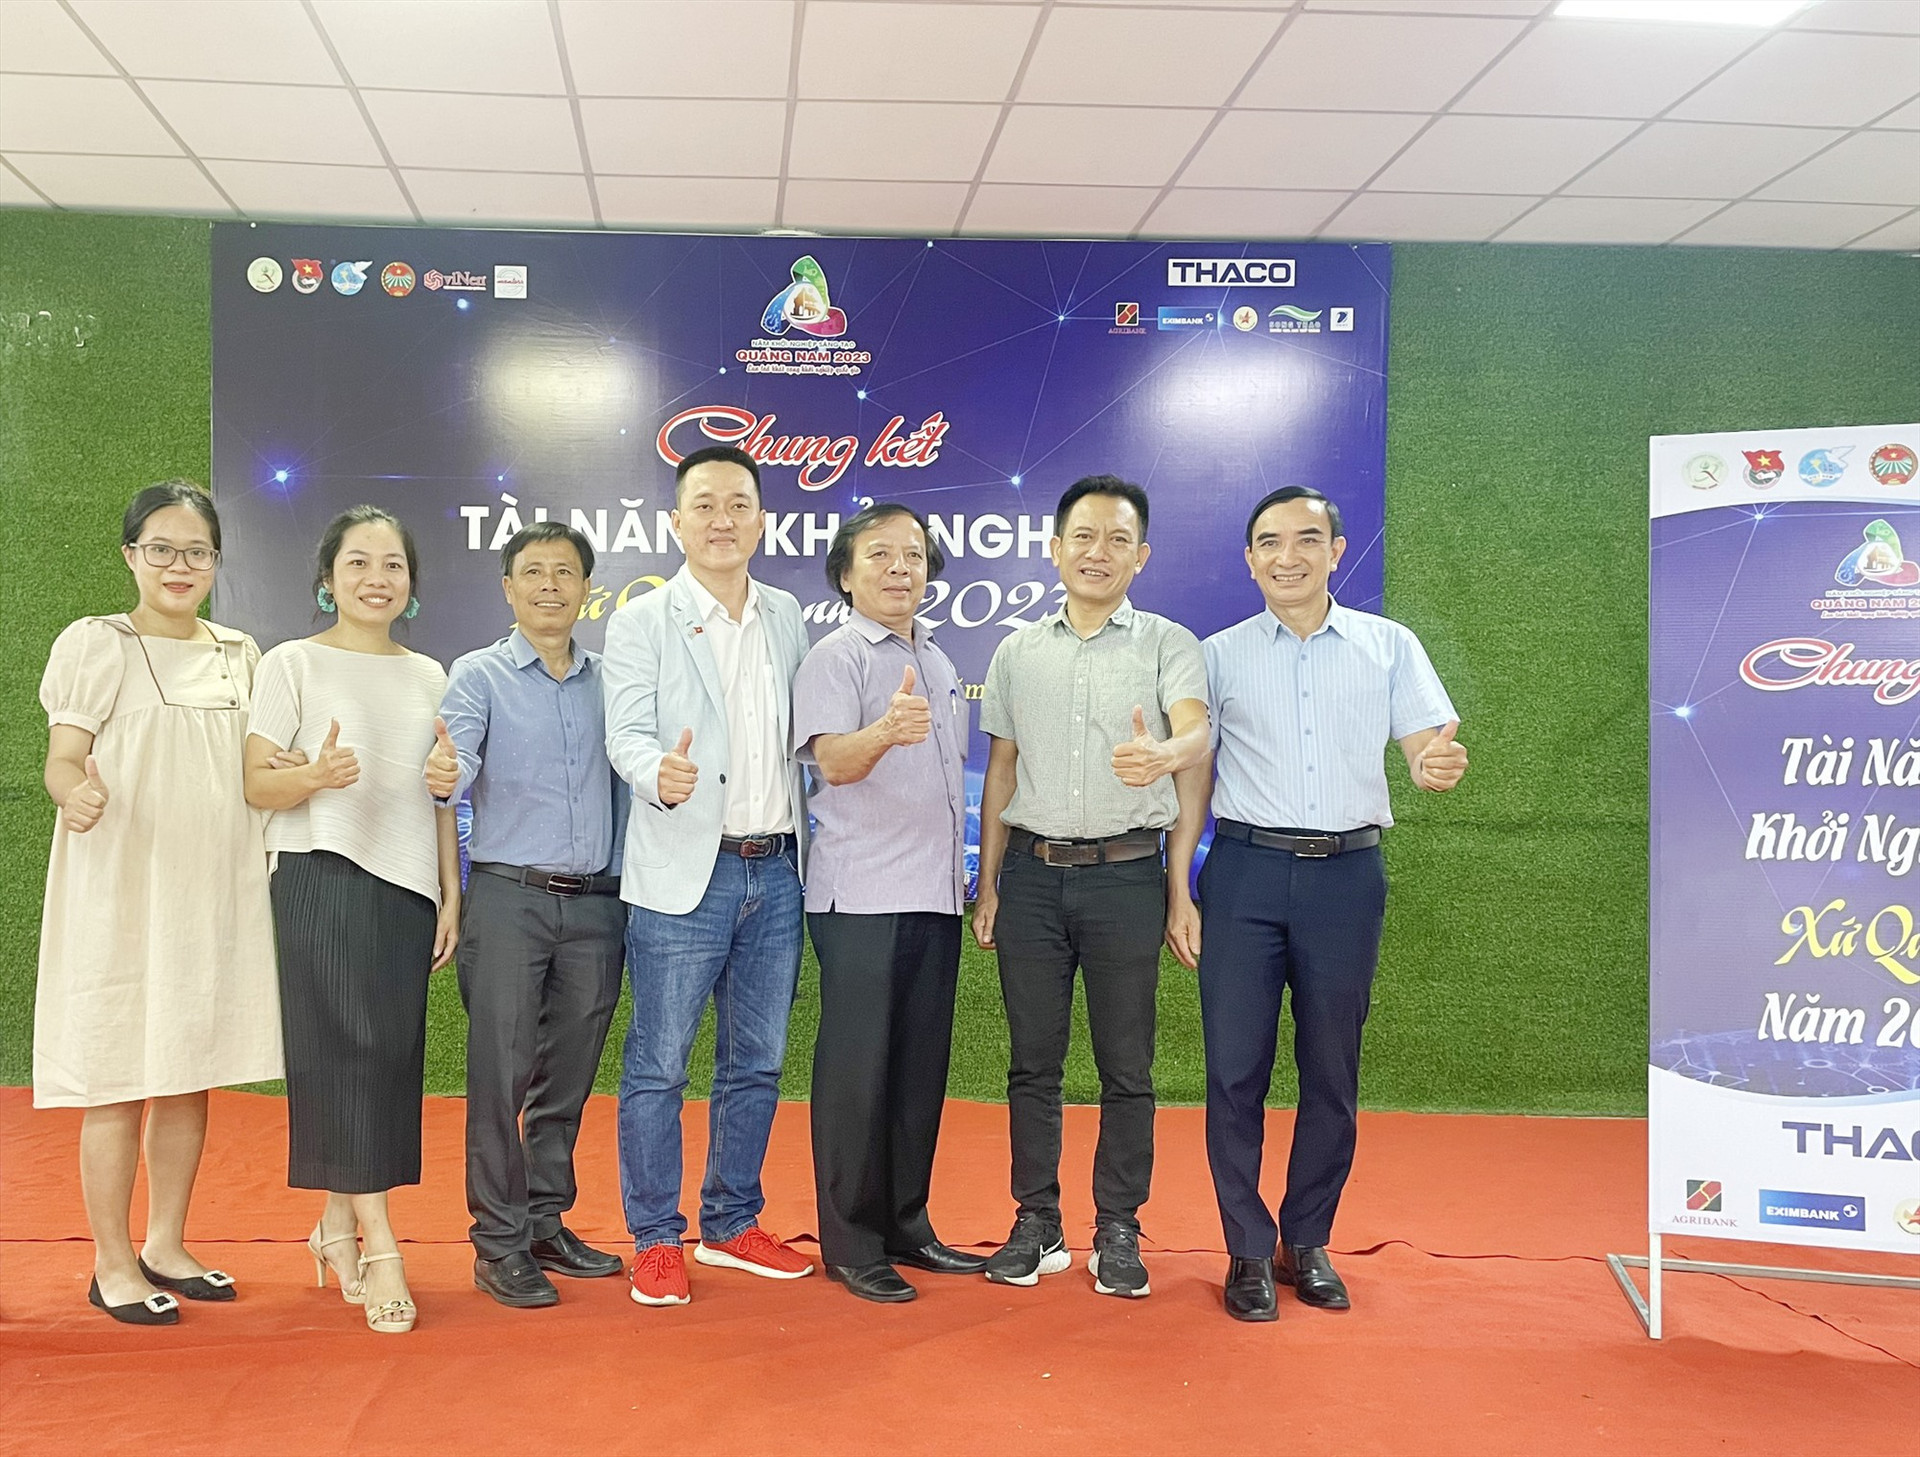 Champion tham gia Hội đồng đánh giá “Tài năng khởi nghiệp xứ Quảng”. Ảnh: CTV